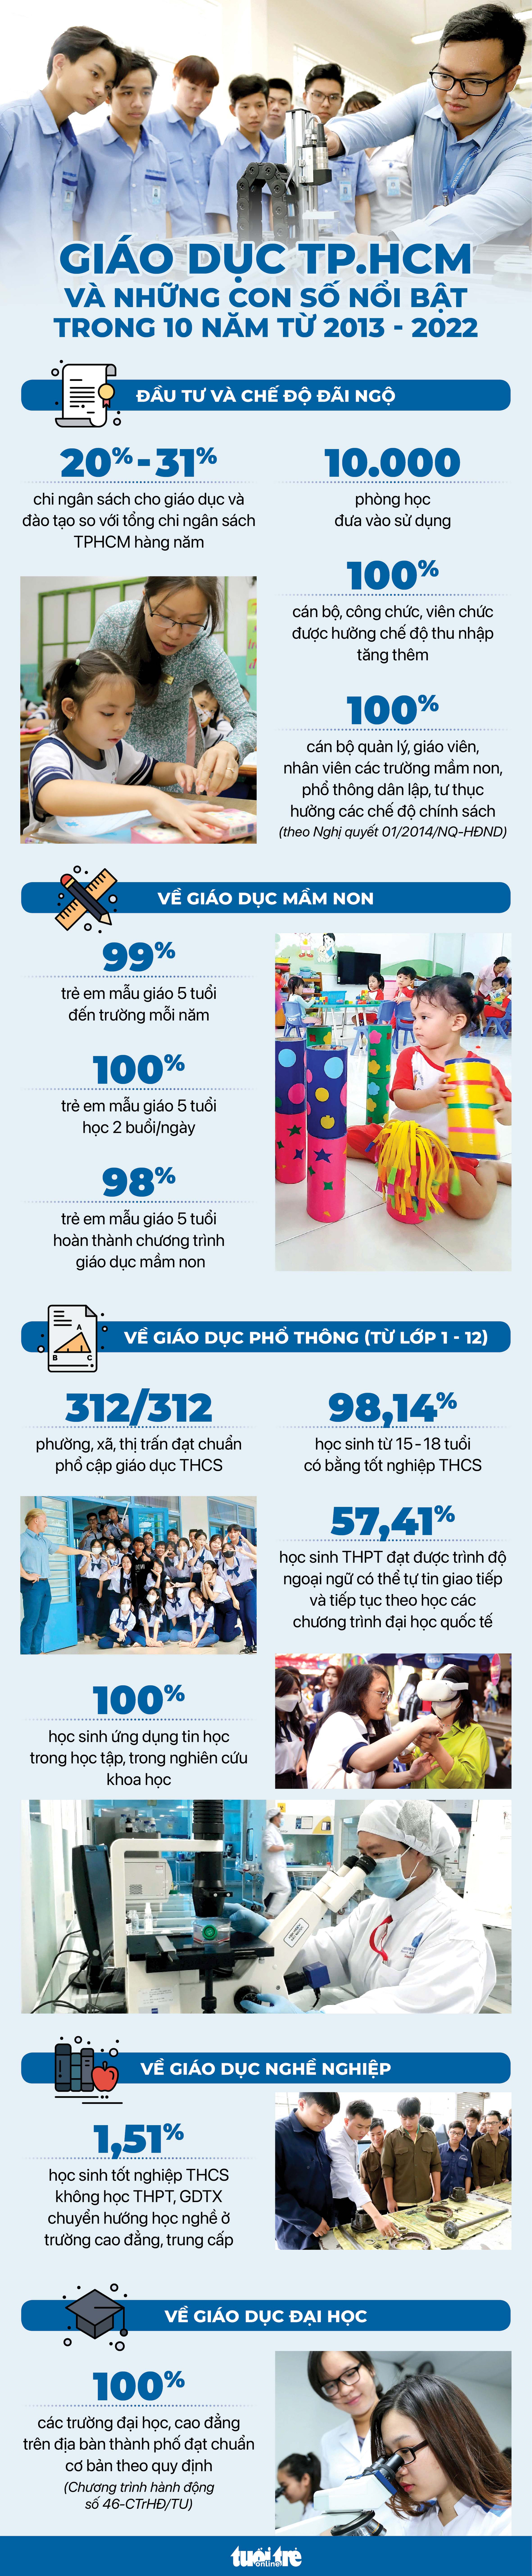 Những kết quả giáo dục Việt Nam đạt được trong giai đoạn 2013 - 2022 - Đồ họa: NGỌC THÀNH